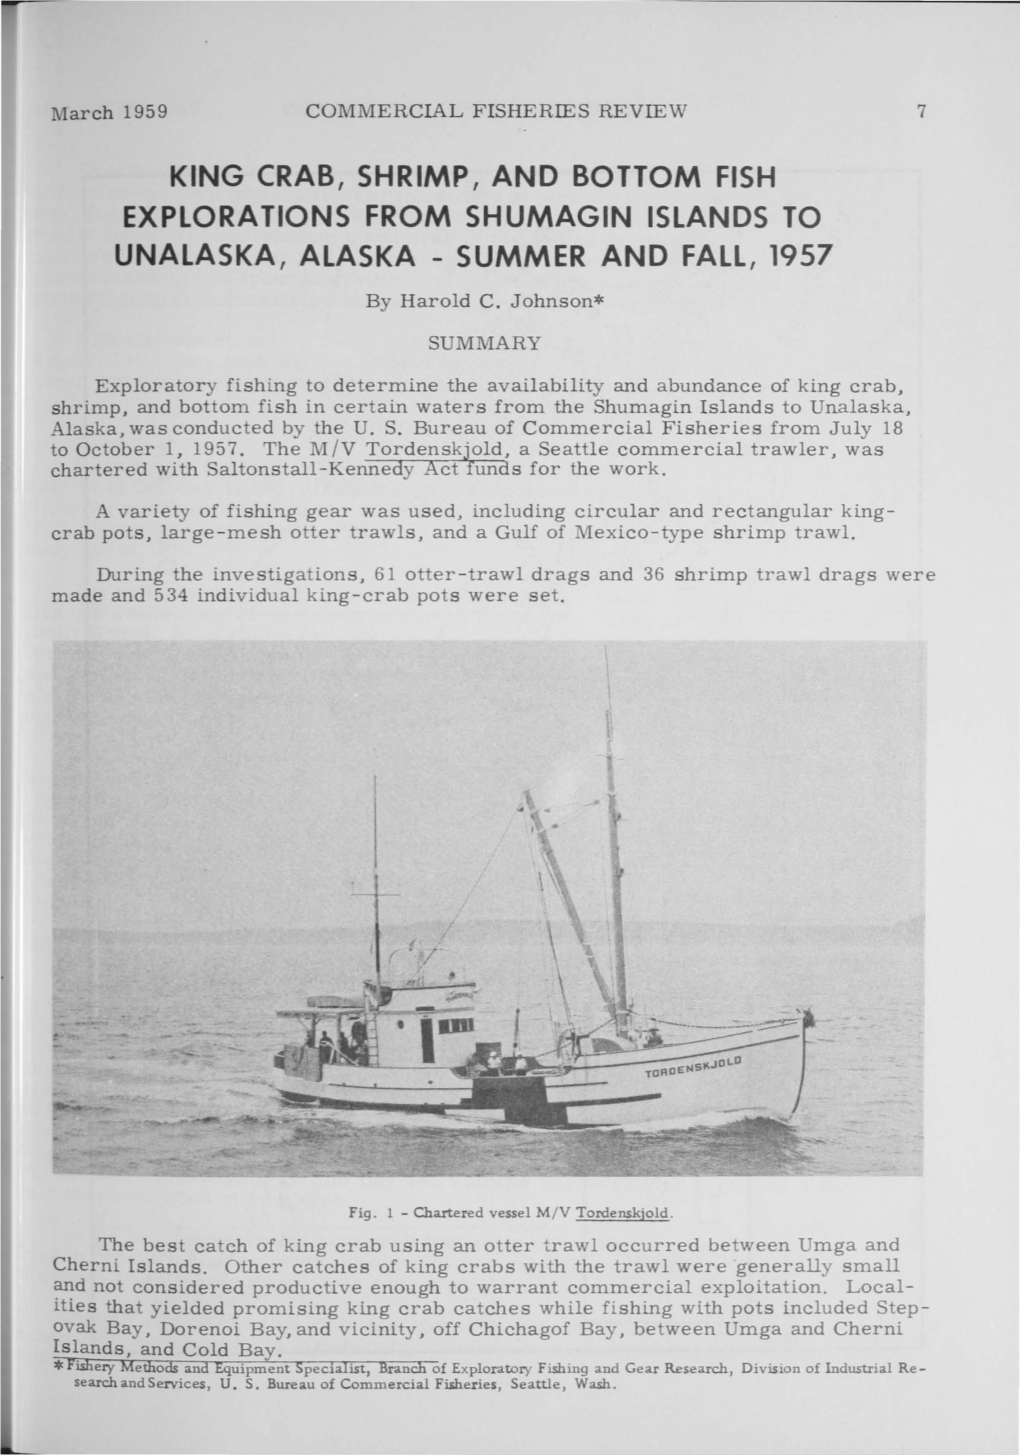 King Crab, Shrimp, and Bottom Fish Explorations from Shumagin Islands to Unalaska, Alaska - Summer and Fall, 1957